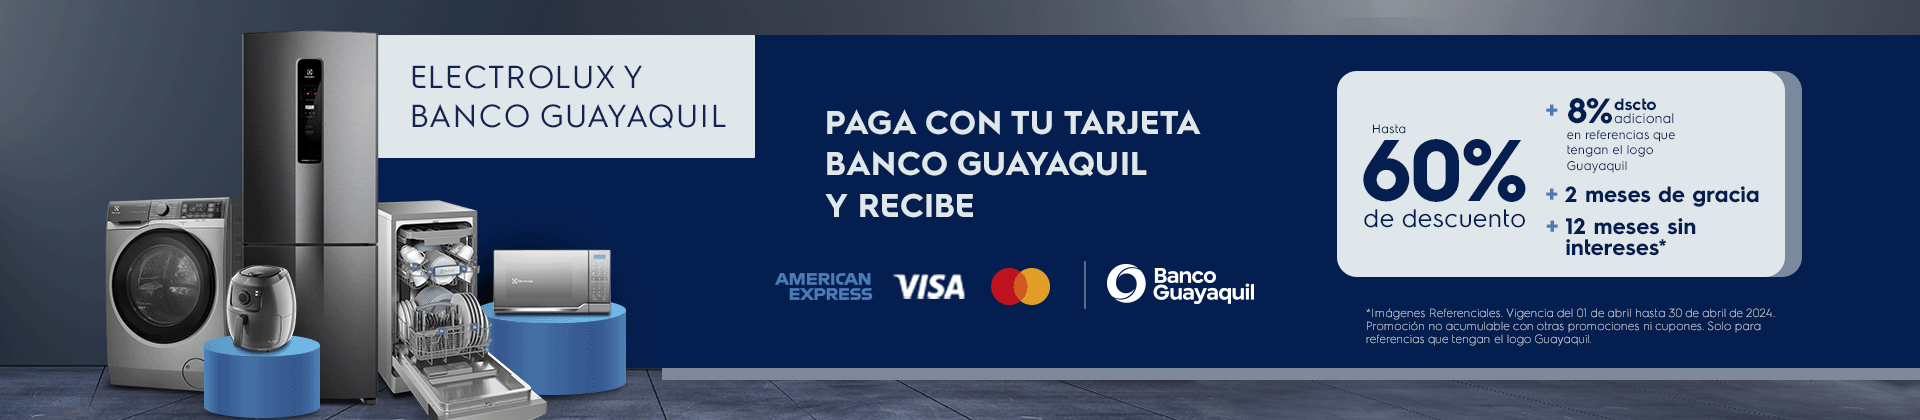 Electrolux y Banco Guayaquil - paga con tu tarjeta y recibe + 8% dscto adicional + 2 meses de gracia 